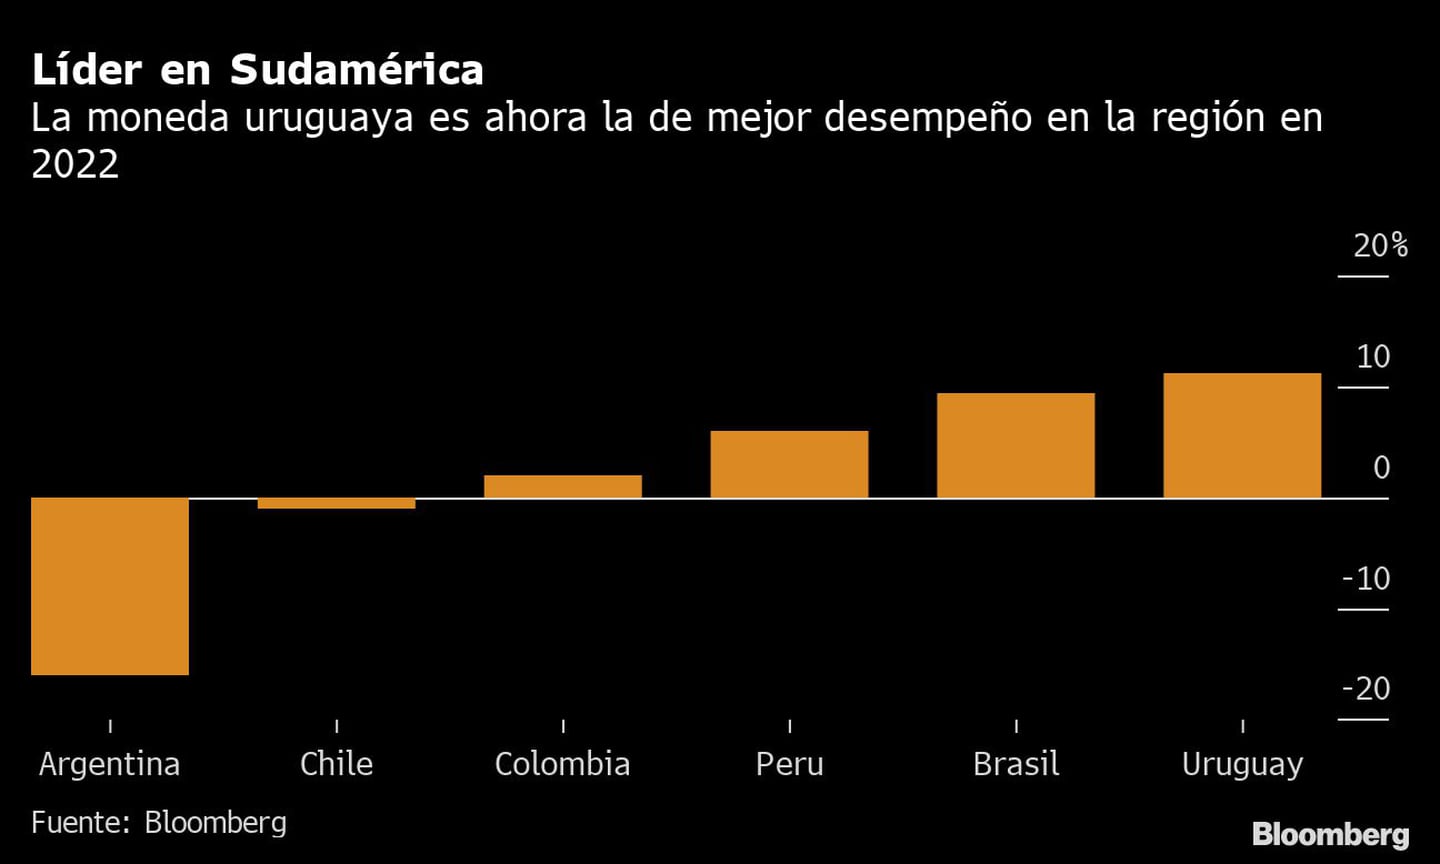 La moneda uruguaya es ahora la de mejor desempeño en la región en 2022dfd